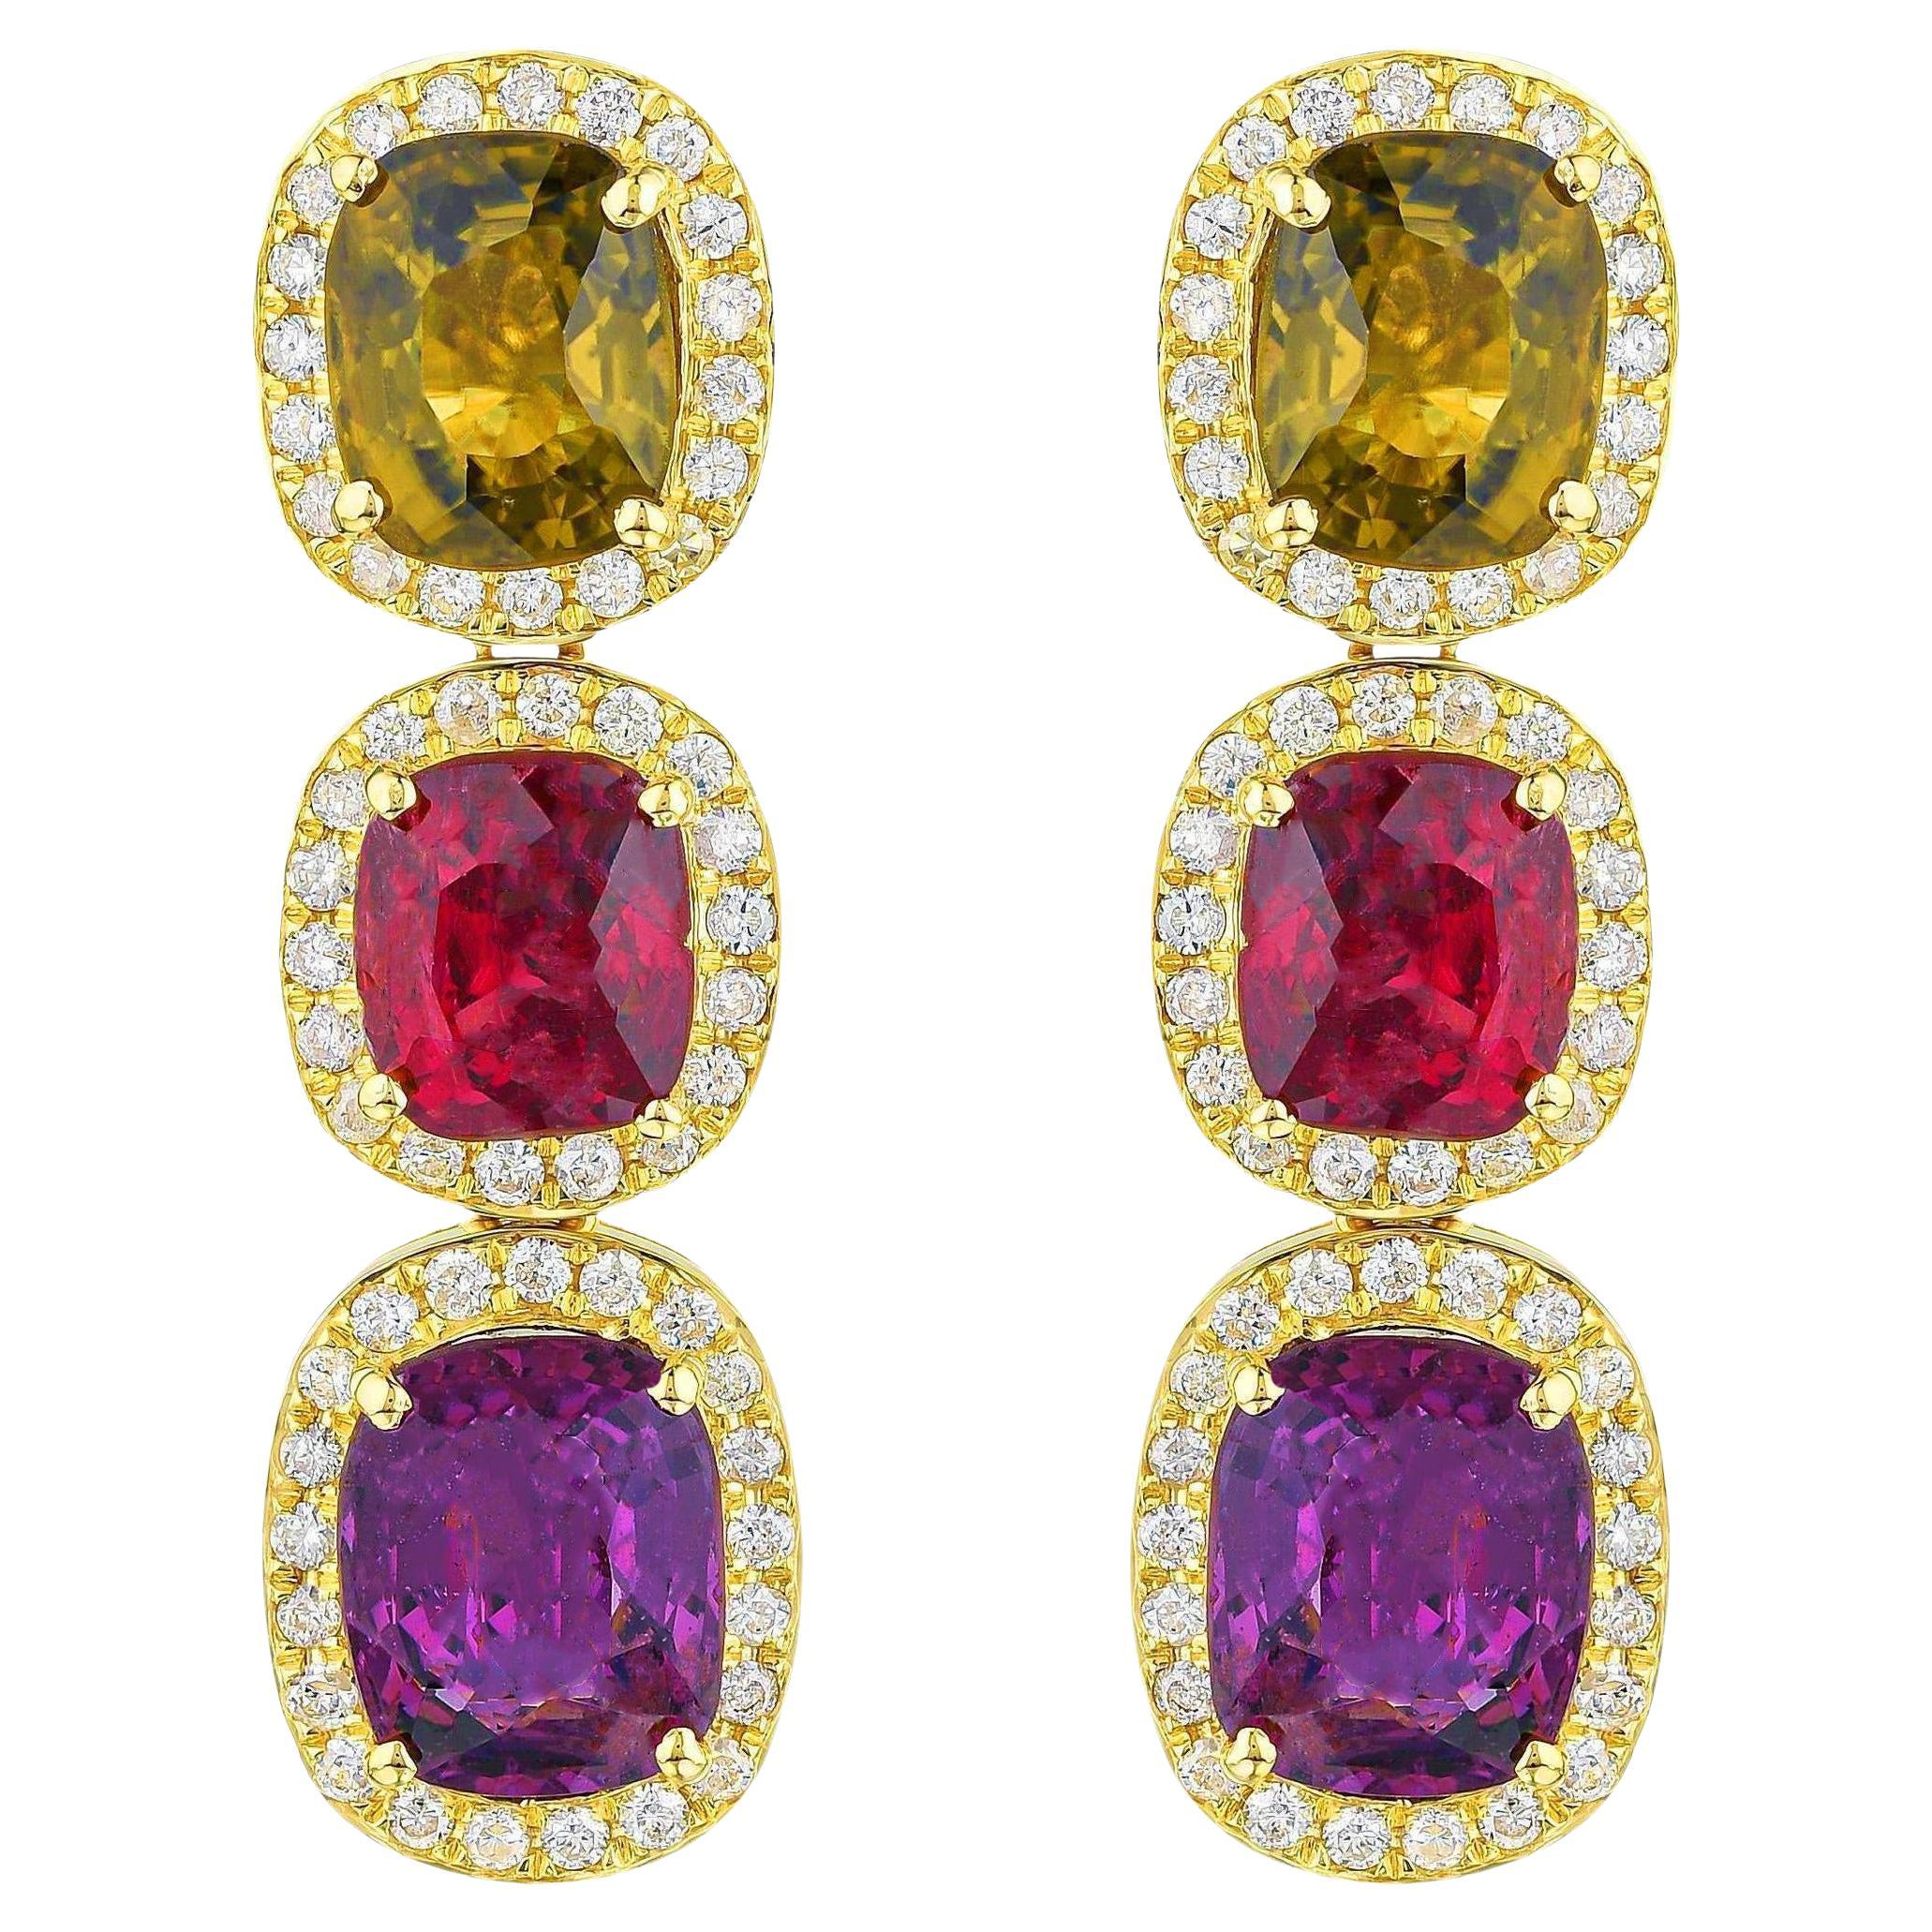 Boucles d'oreilles en or 18 carats avec spinelle naturelle multicolore et halo de diamants de 8,50 carats